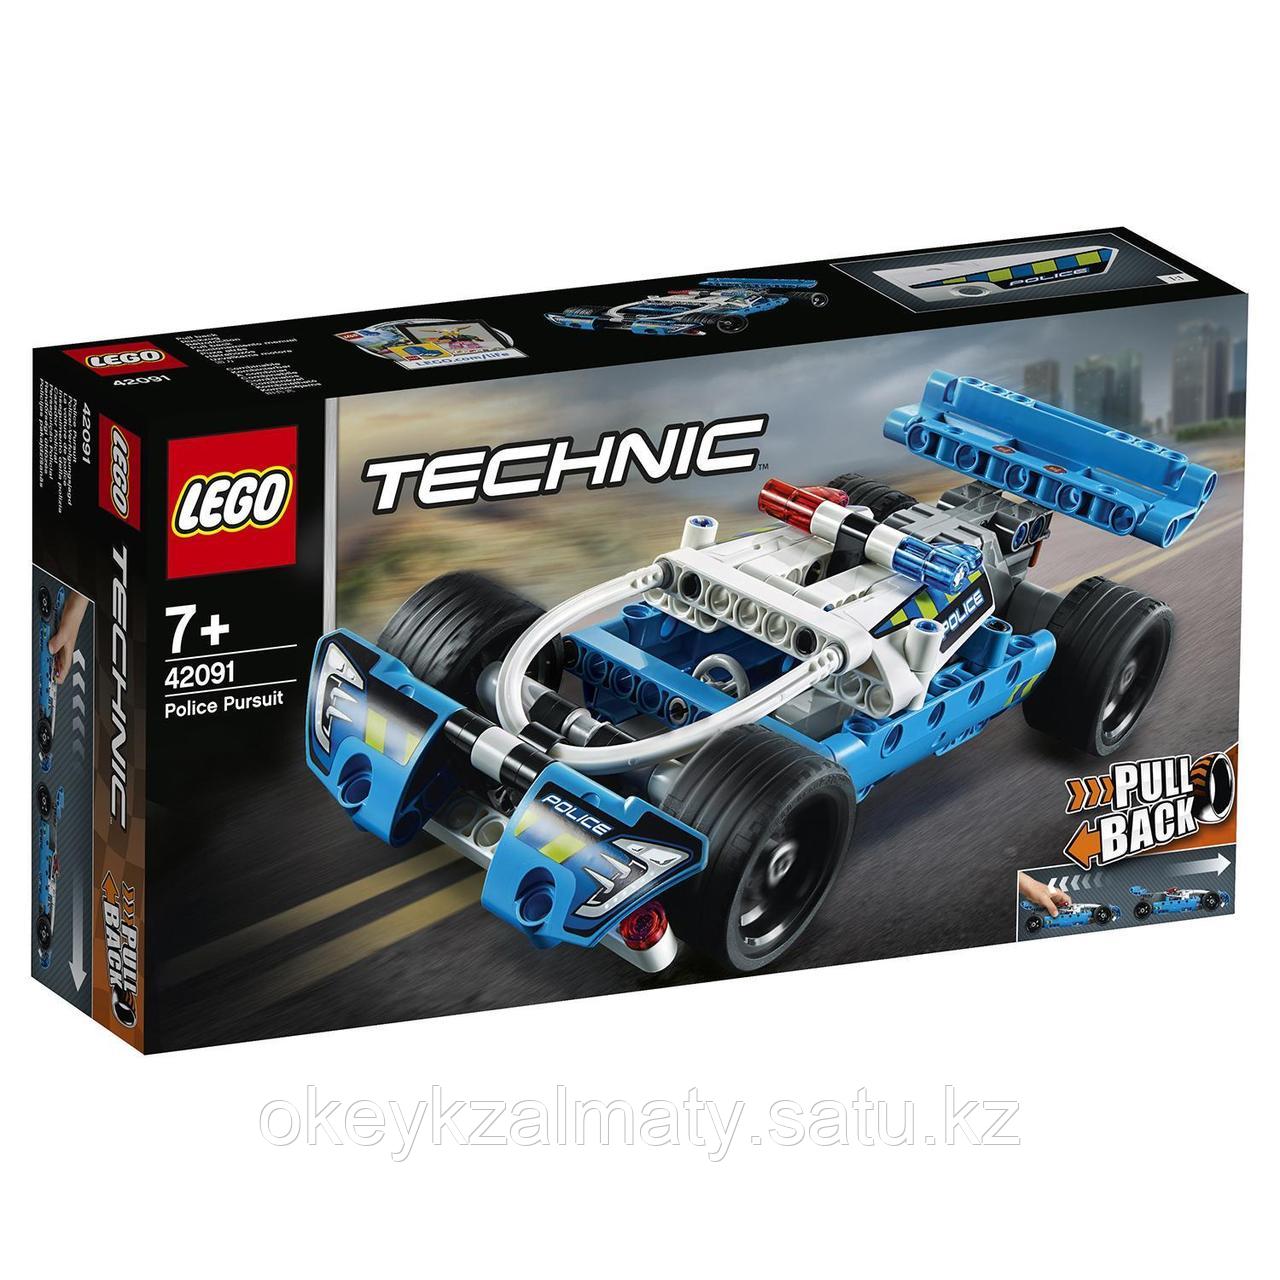 LEGO Technic: Полицейская погоня 42091